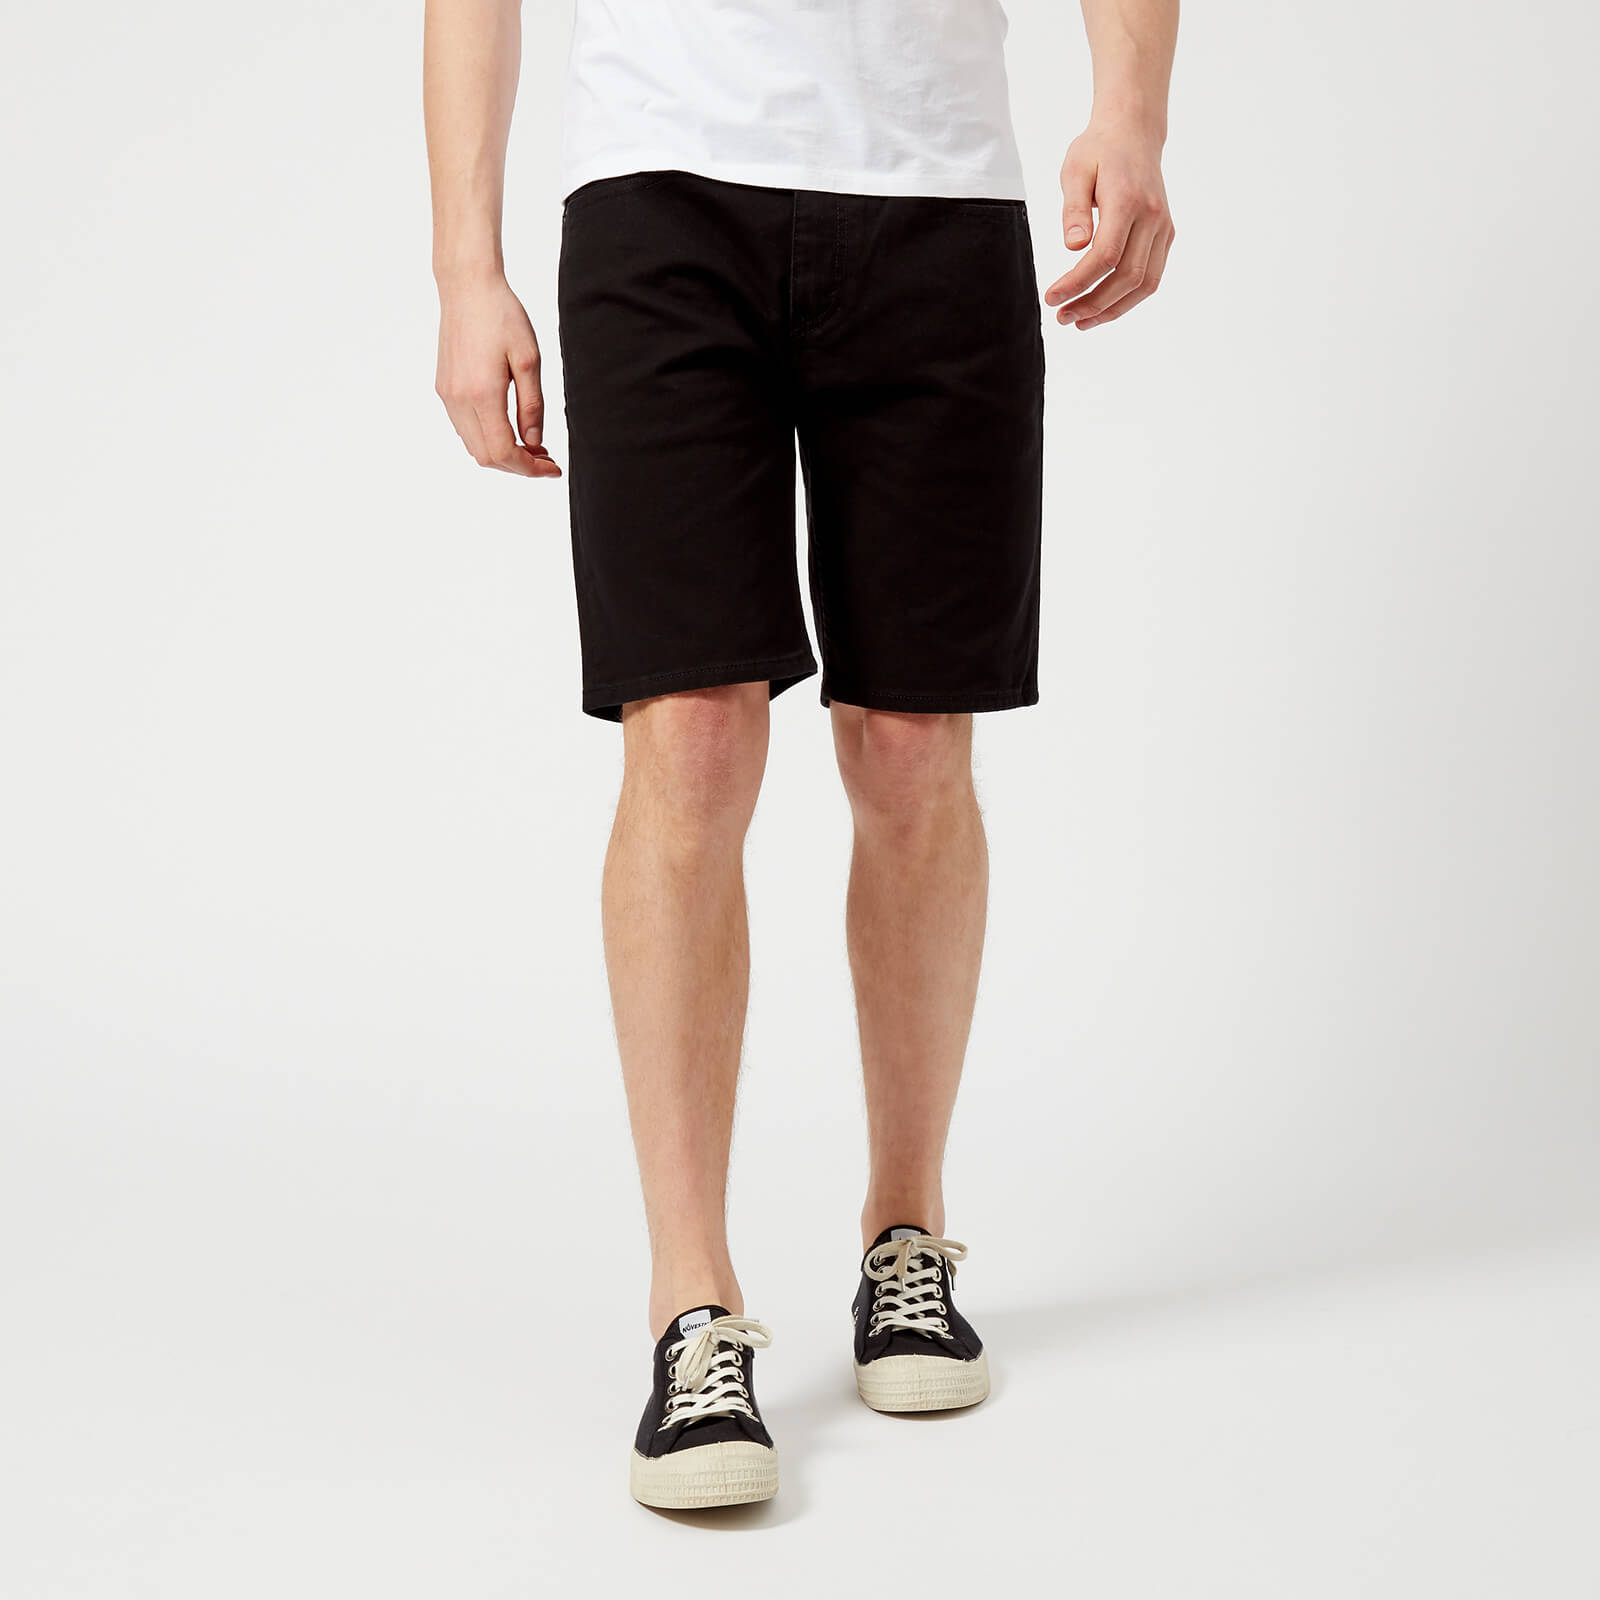 levis 502 shorts black